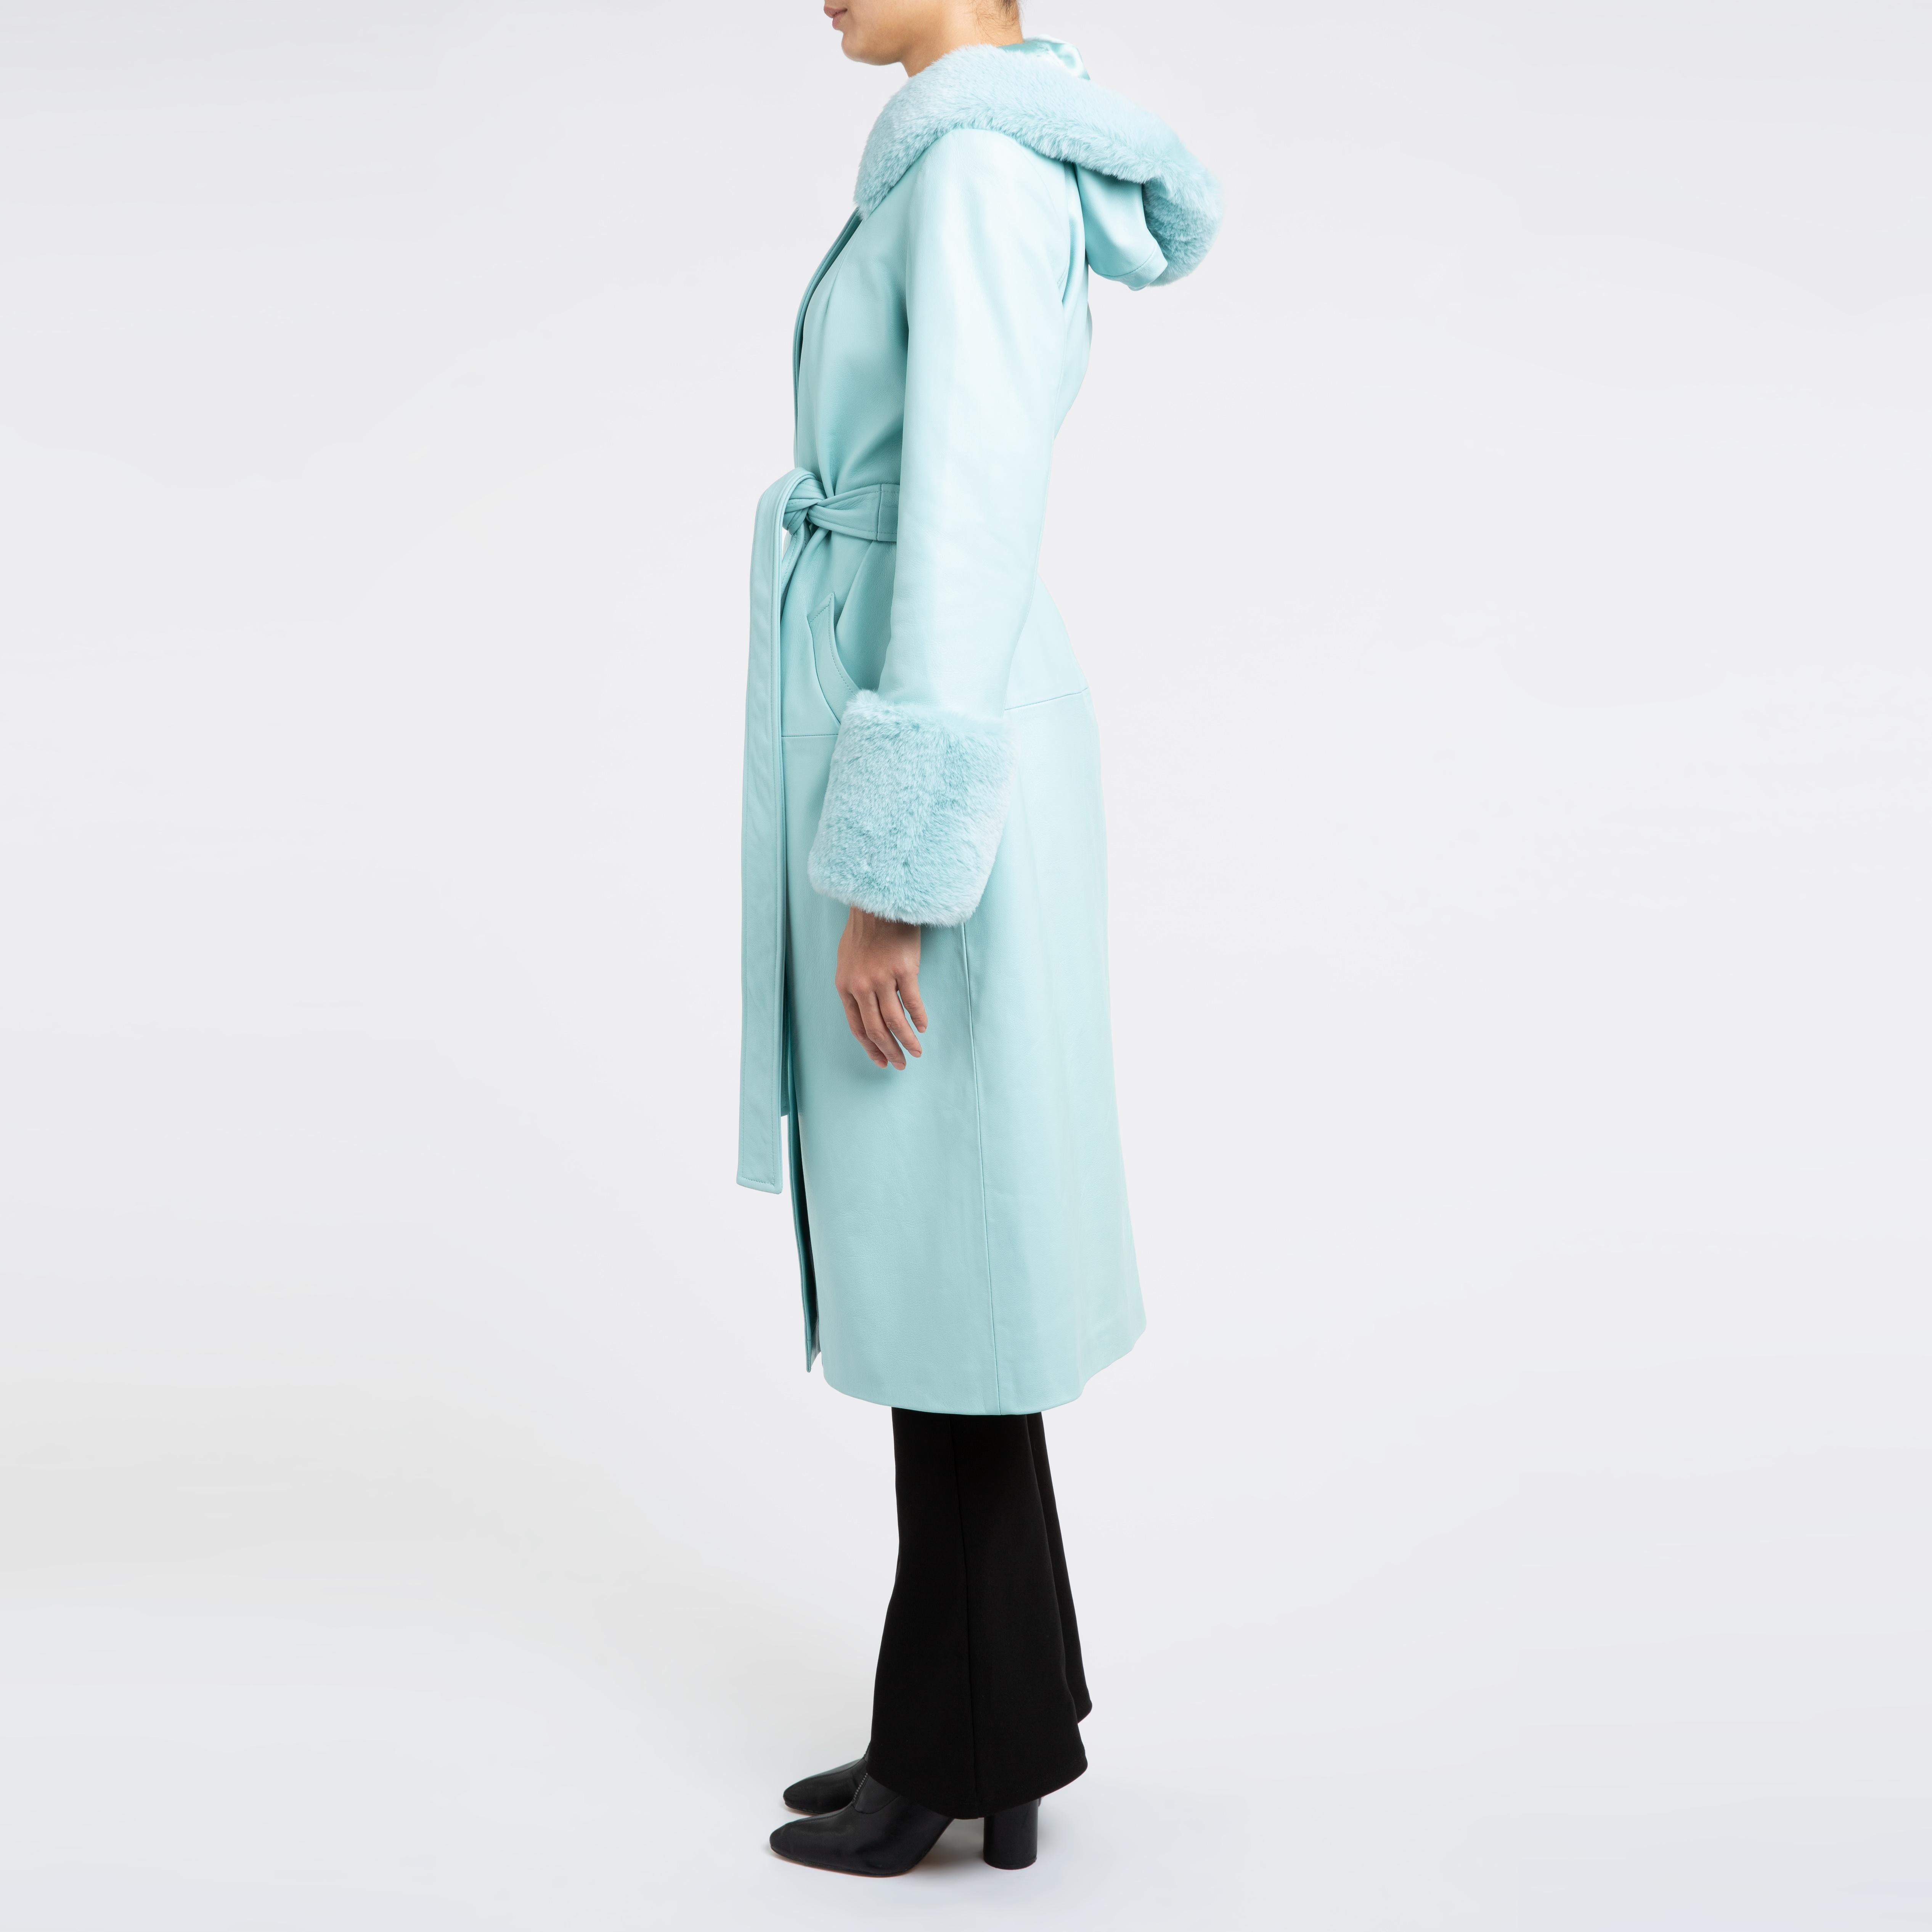 Women's Verheyen London Hooded Leather Coat in Blue Aquamarine & Faux Fur - Size uk 12 For Sale